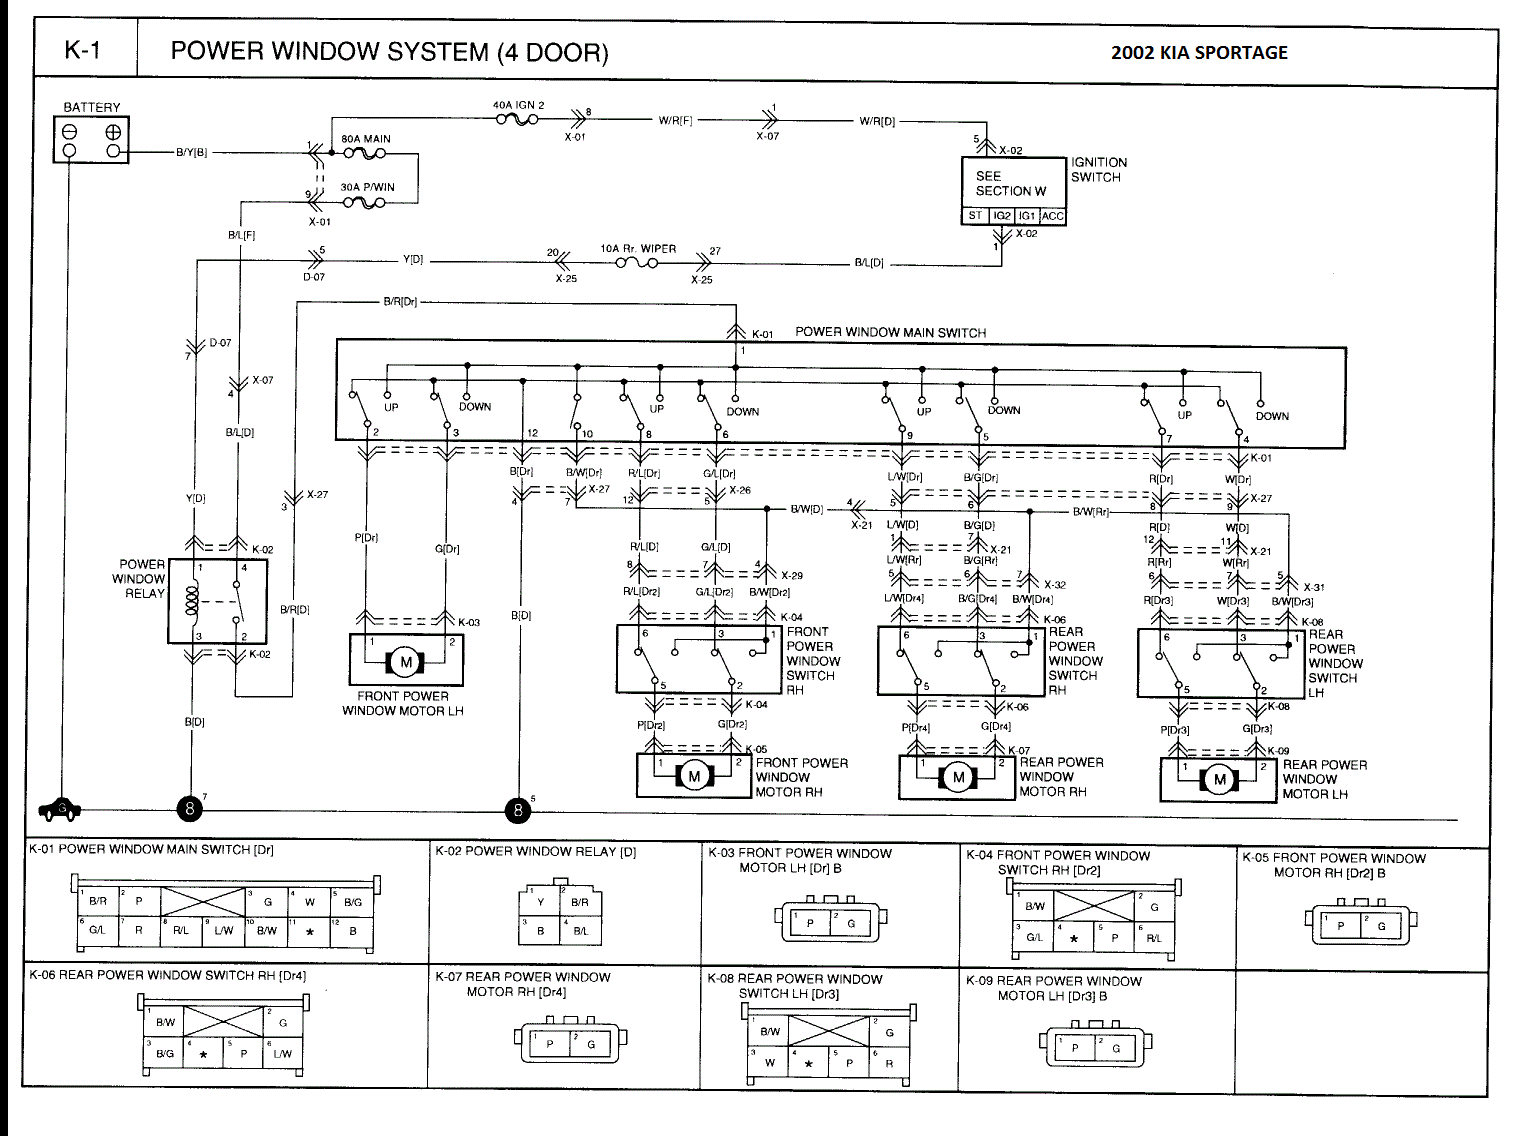 Chevy Colorado Window Motor Wiring Diagram - Wiring Diagram